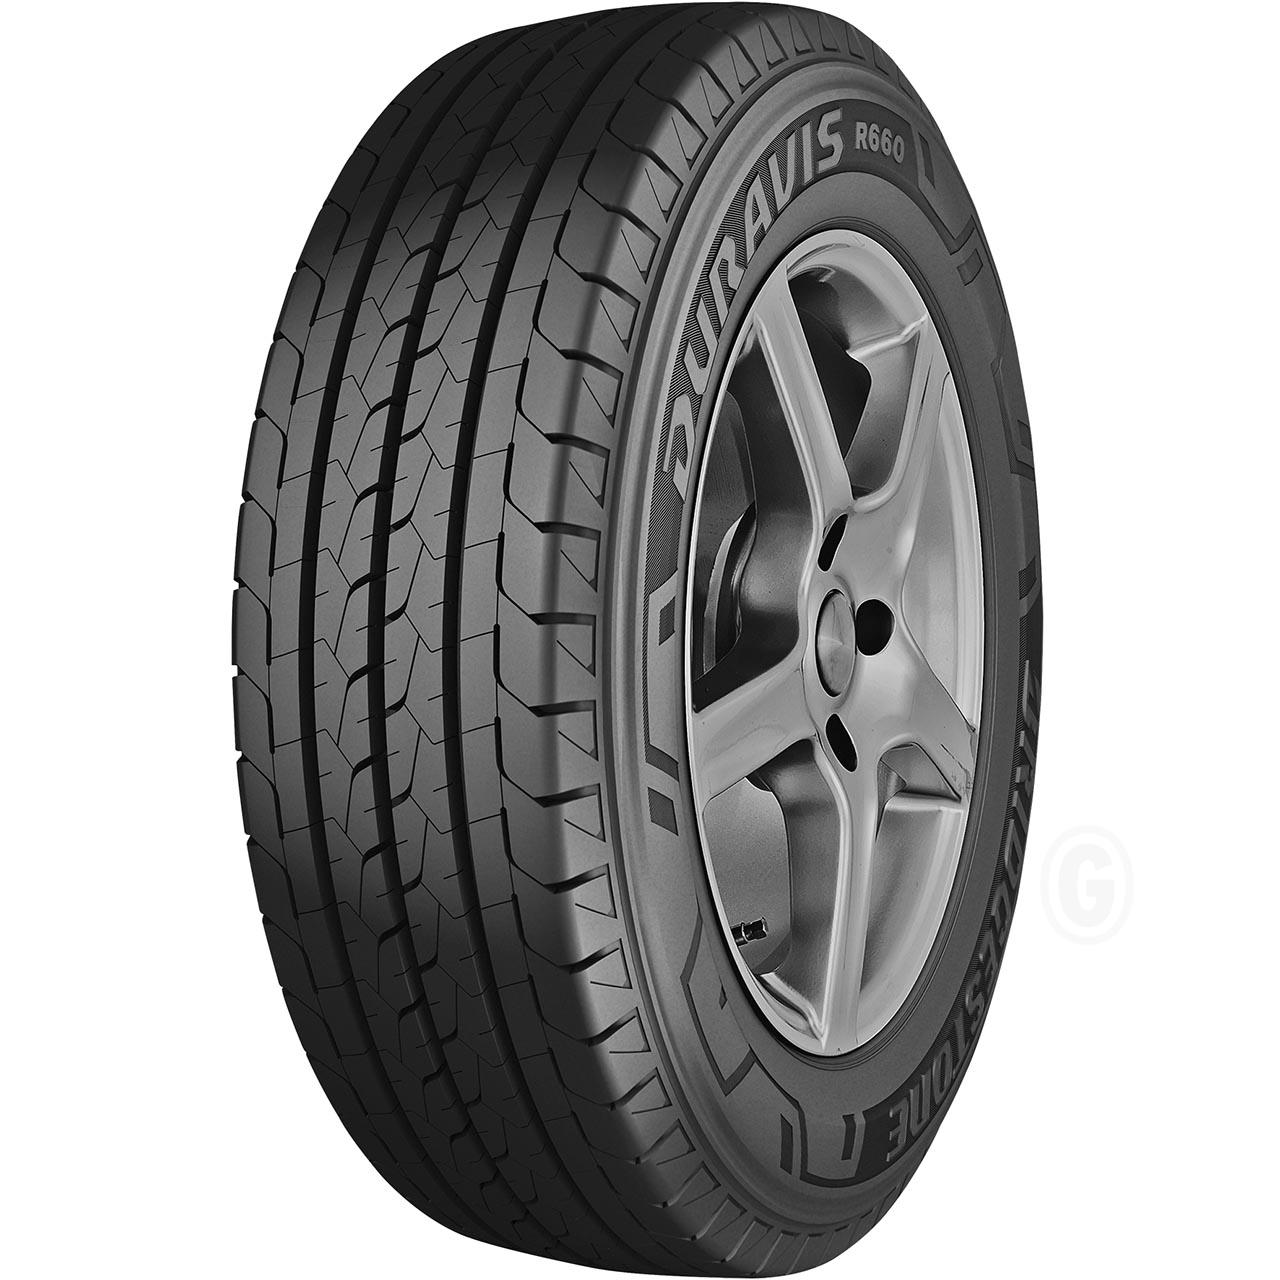 Bridgestone Duravis R660 235/65R16C 121/119R